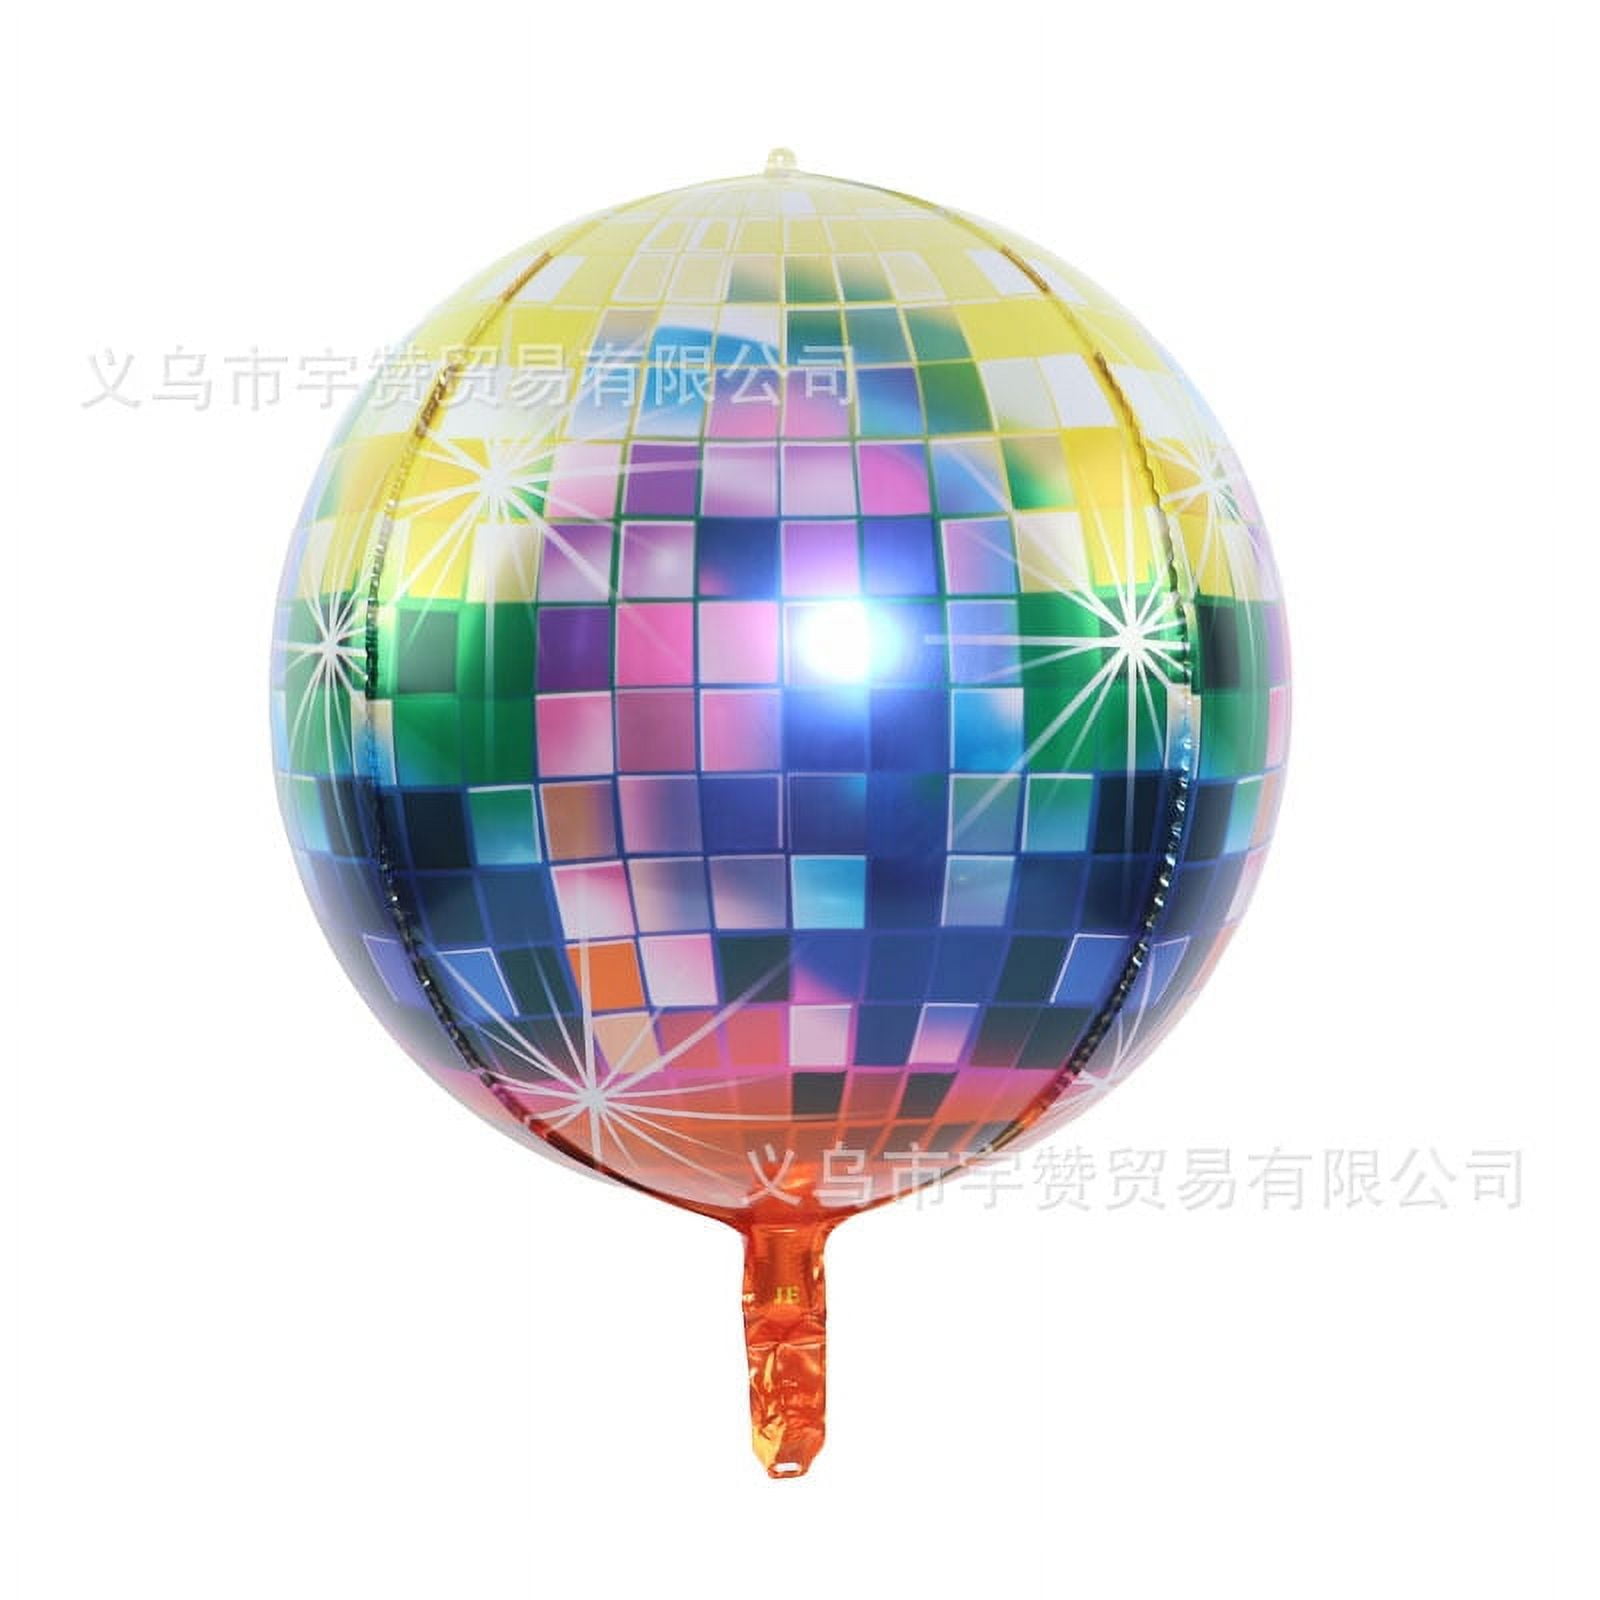 Disco Ball Balloon – Barry's Balloons